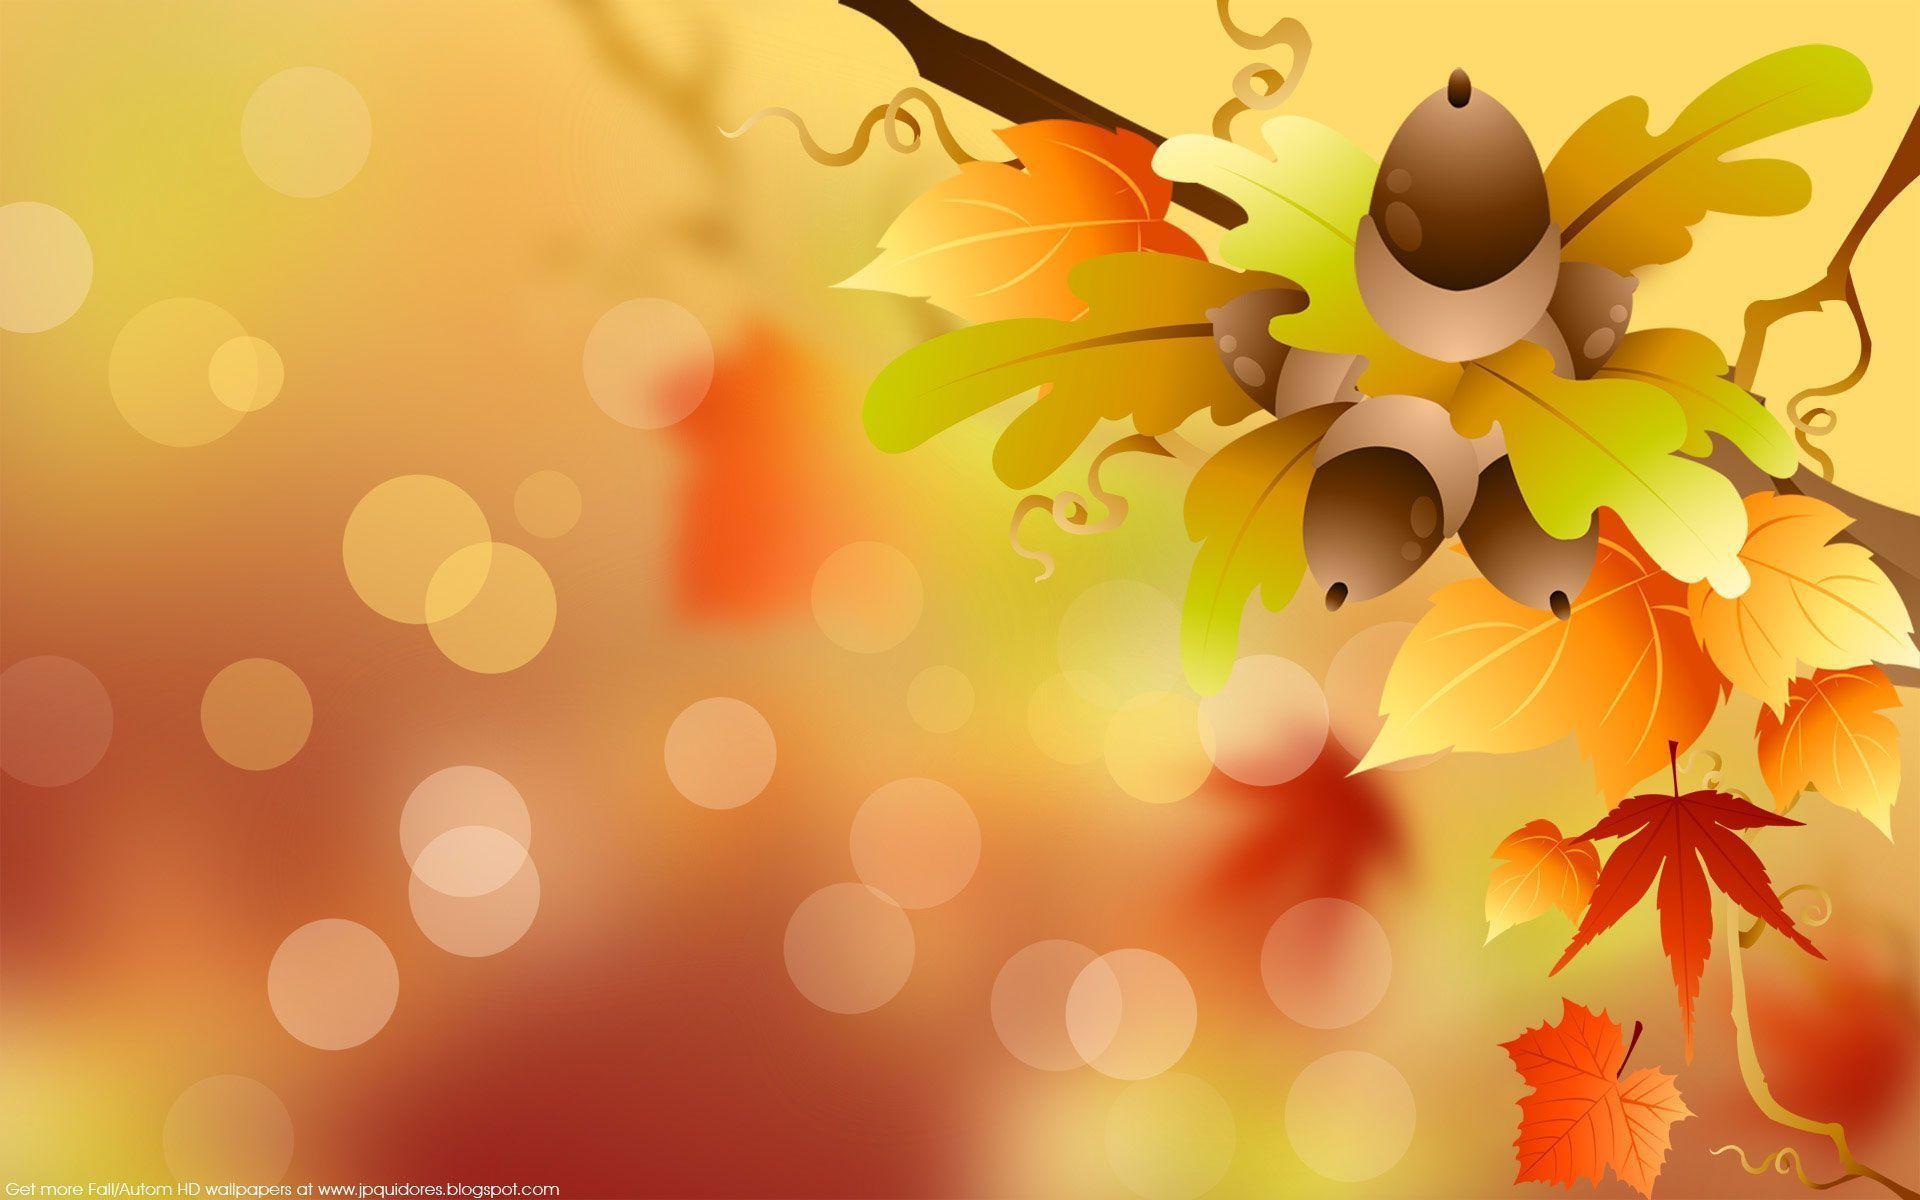 Autumn Desktop Wallpaper HD. Download High Resolution & HD